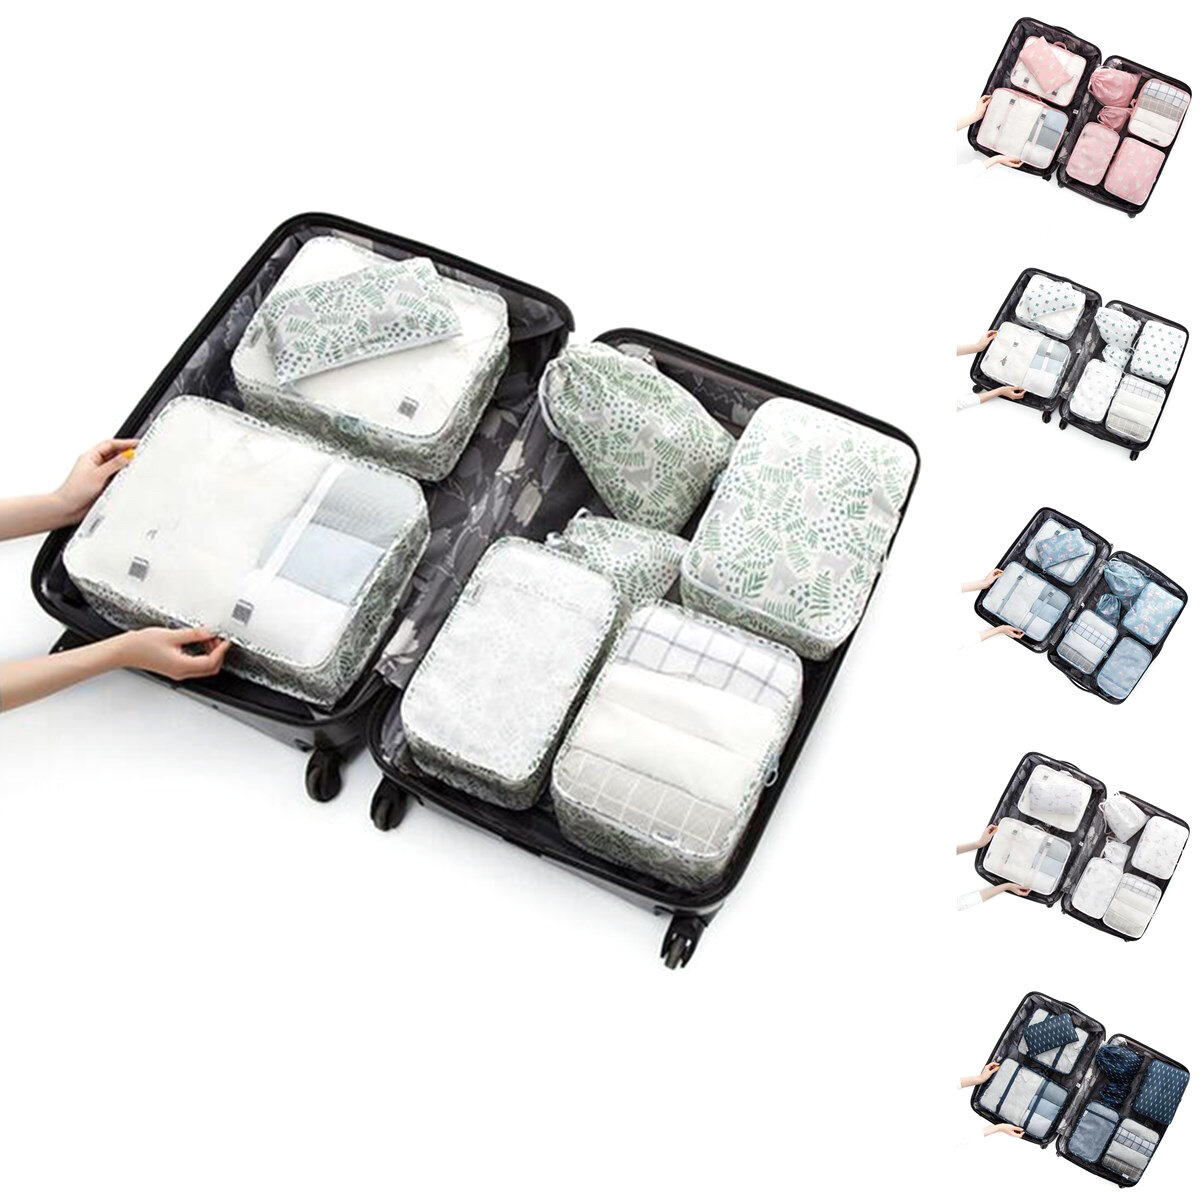 8PCS / Set Travel Багаж Органайзер Сумки для хранения Чемодан Упаковка Сумки